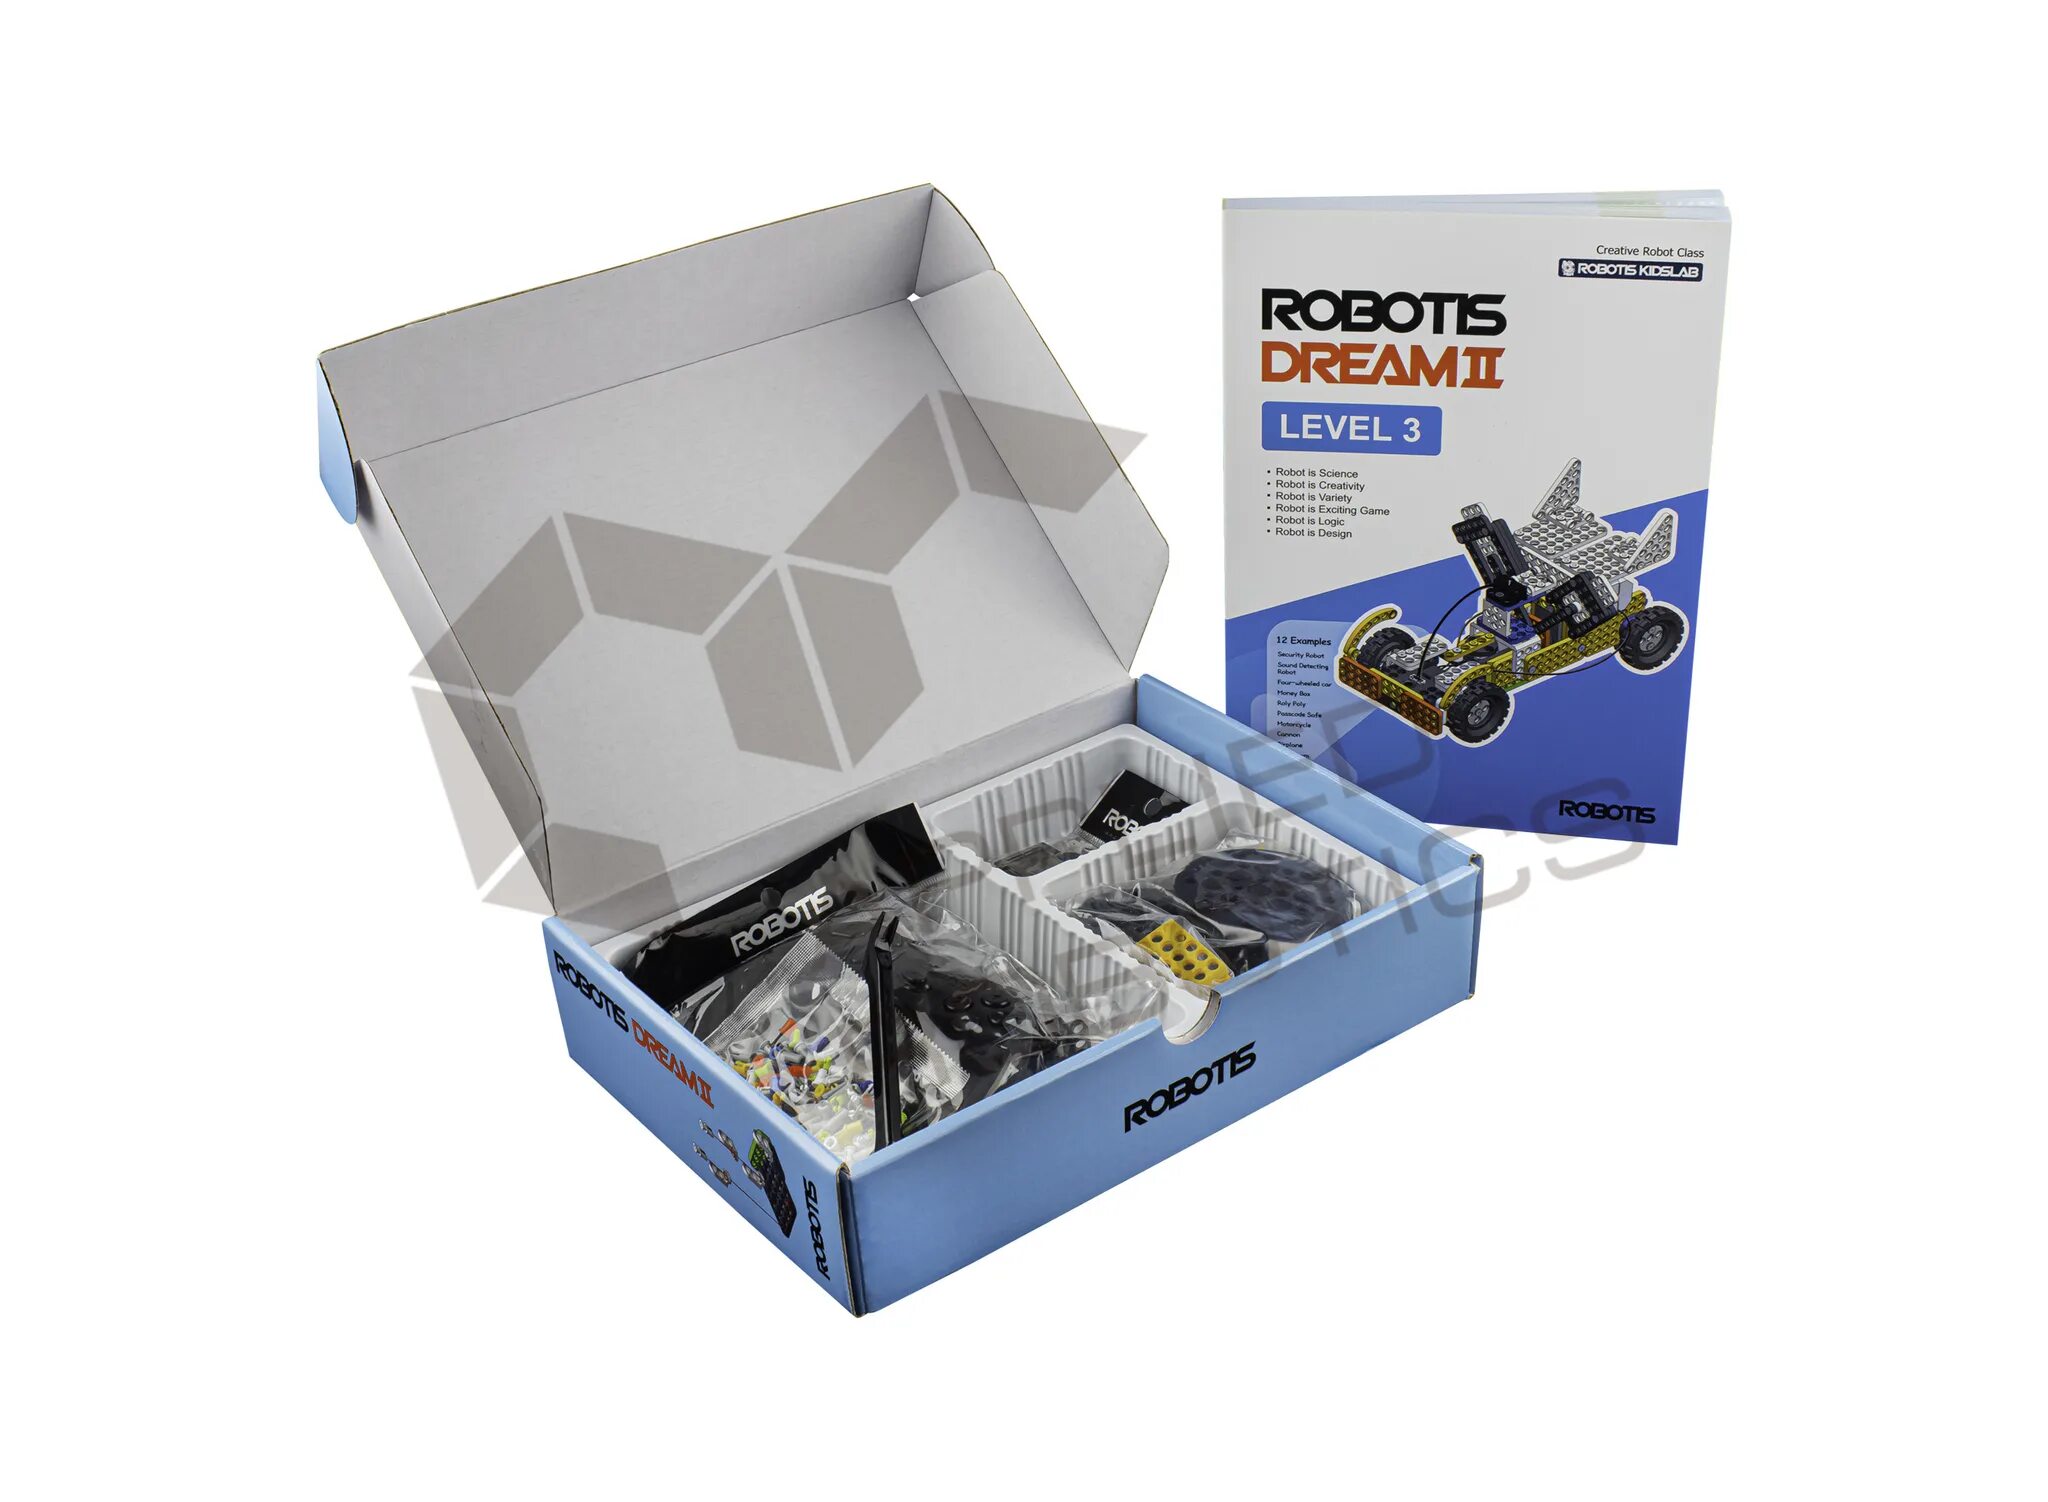 Robotis Dream II Level 1 Kit артикул: 901-0036-201. Комплект робототехнический образовательный robotis Dream II lvl 4. Robotis Dream II заклёпка. Электромеханический конструктор robotis Dream 0066 уровень 3+4. Level 2 10